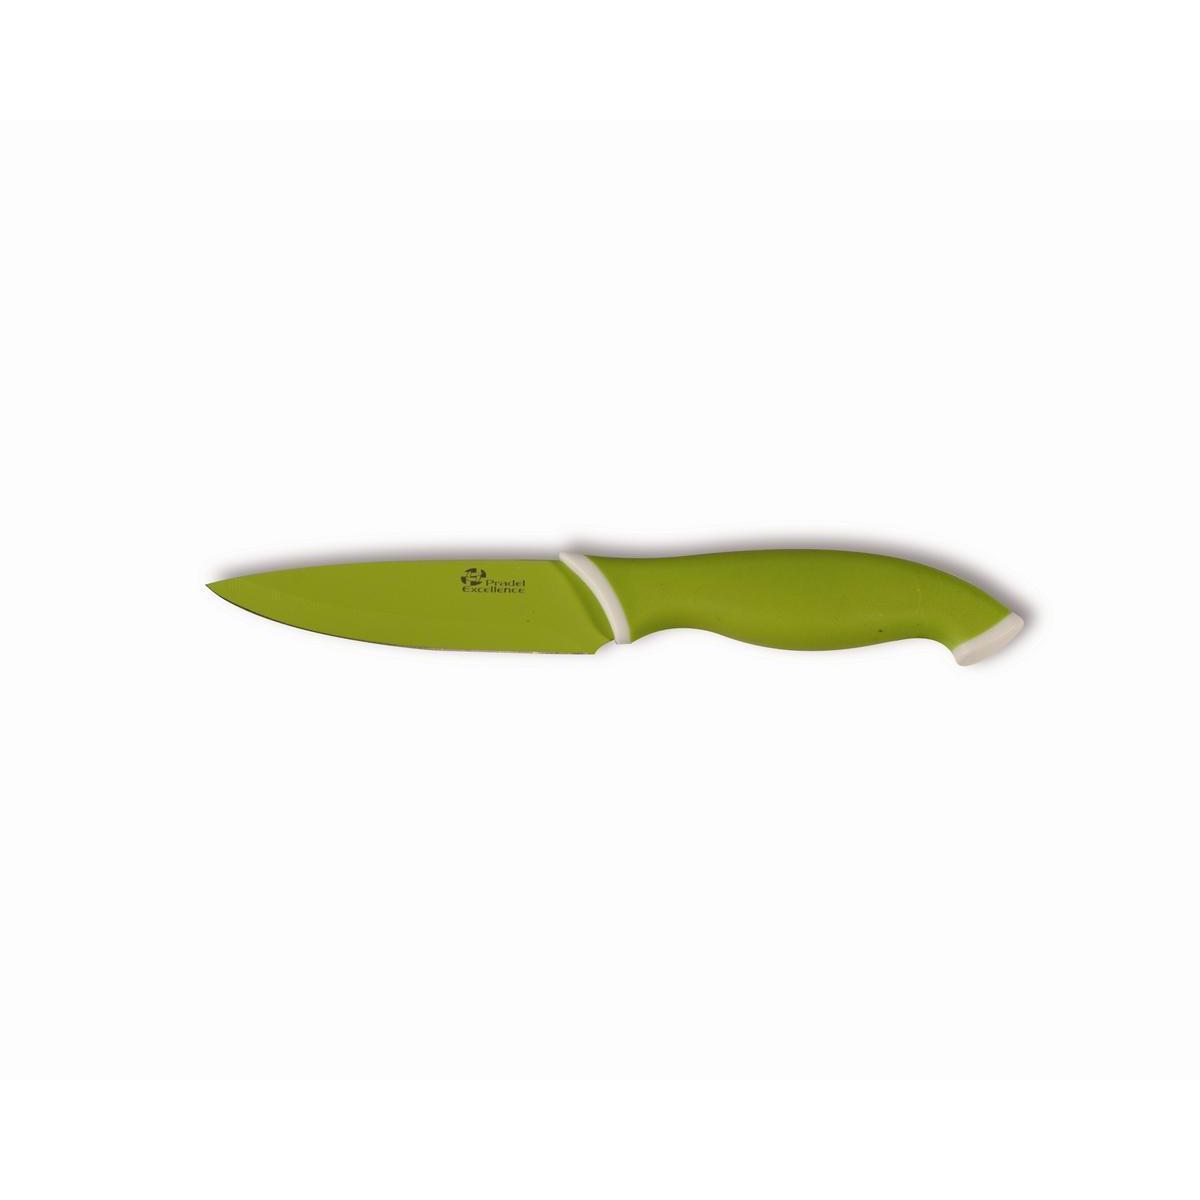 Couteau à découper lame anis - Acier inoxydable - Manche abs - 8,8 cm - Vert